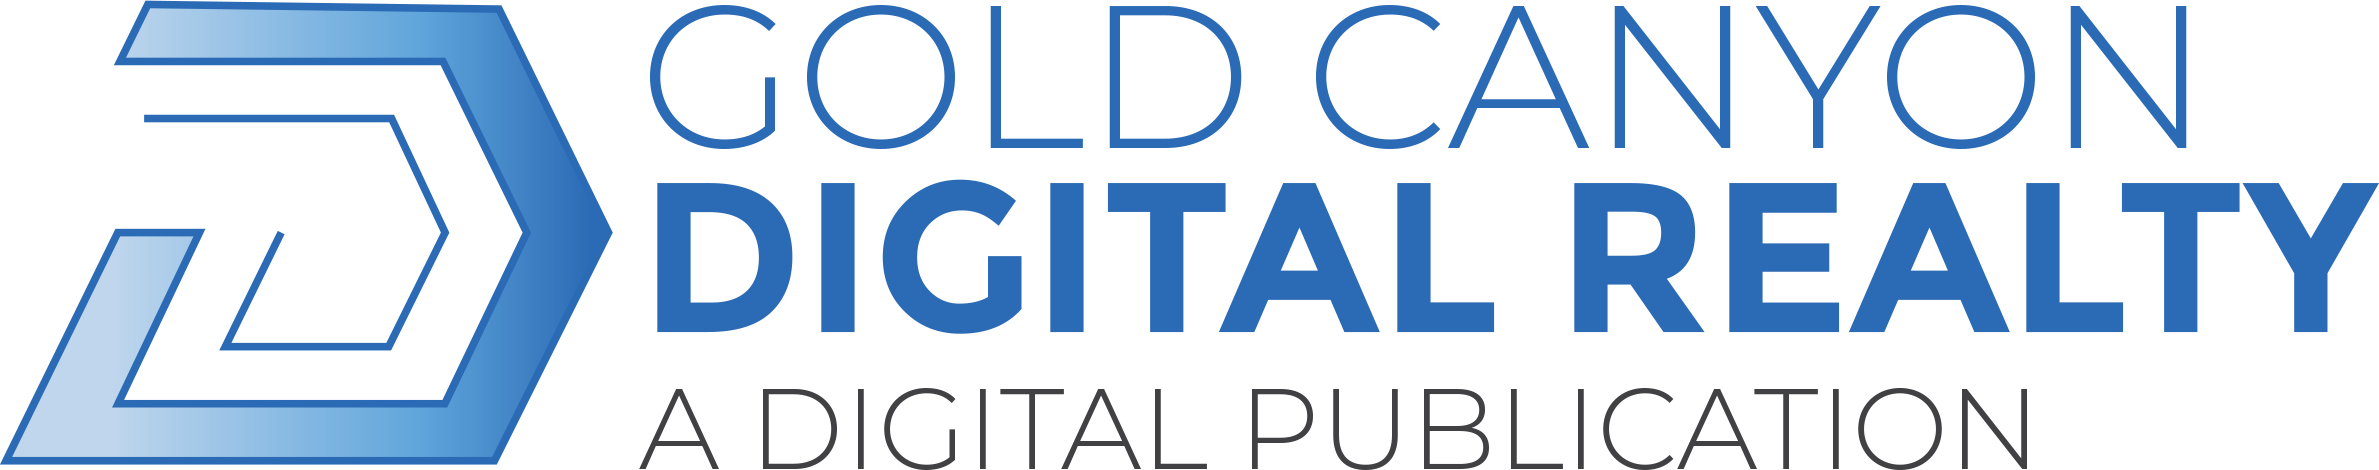 Gold Canyon Digital Realty Logo